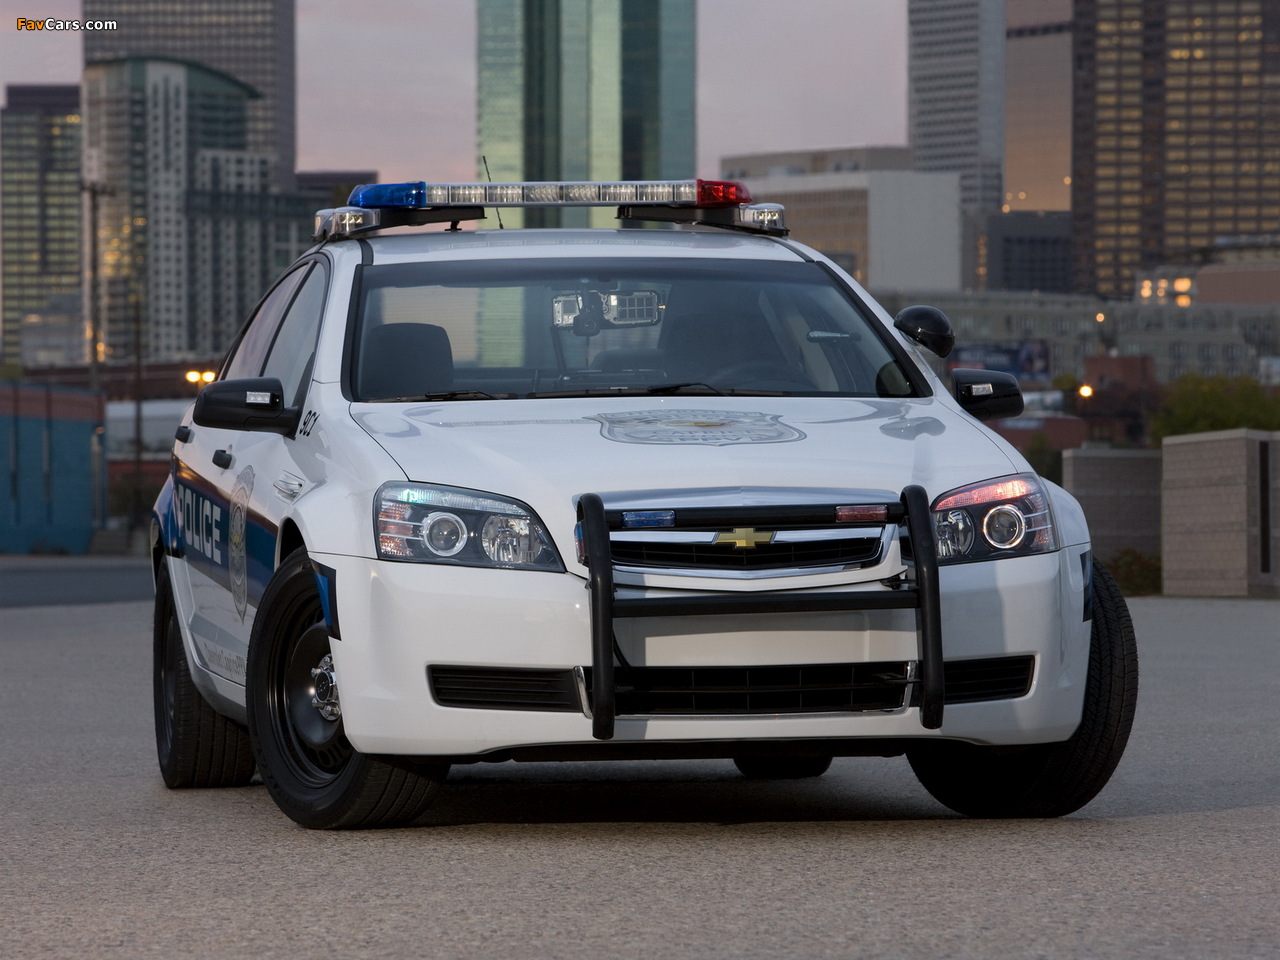 Chevrolet Caprice Police Patrol Vehicle 2010 photos (1280 x 960)